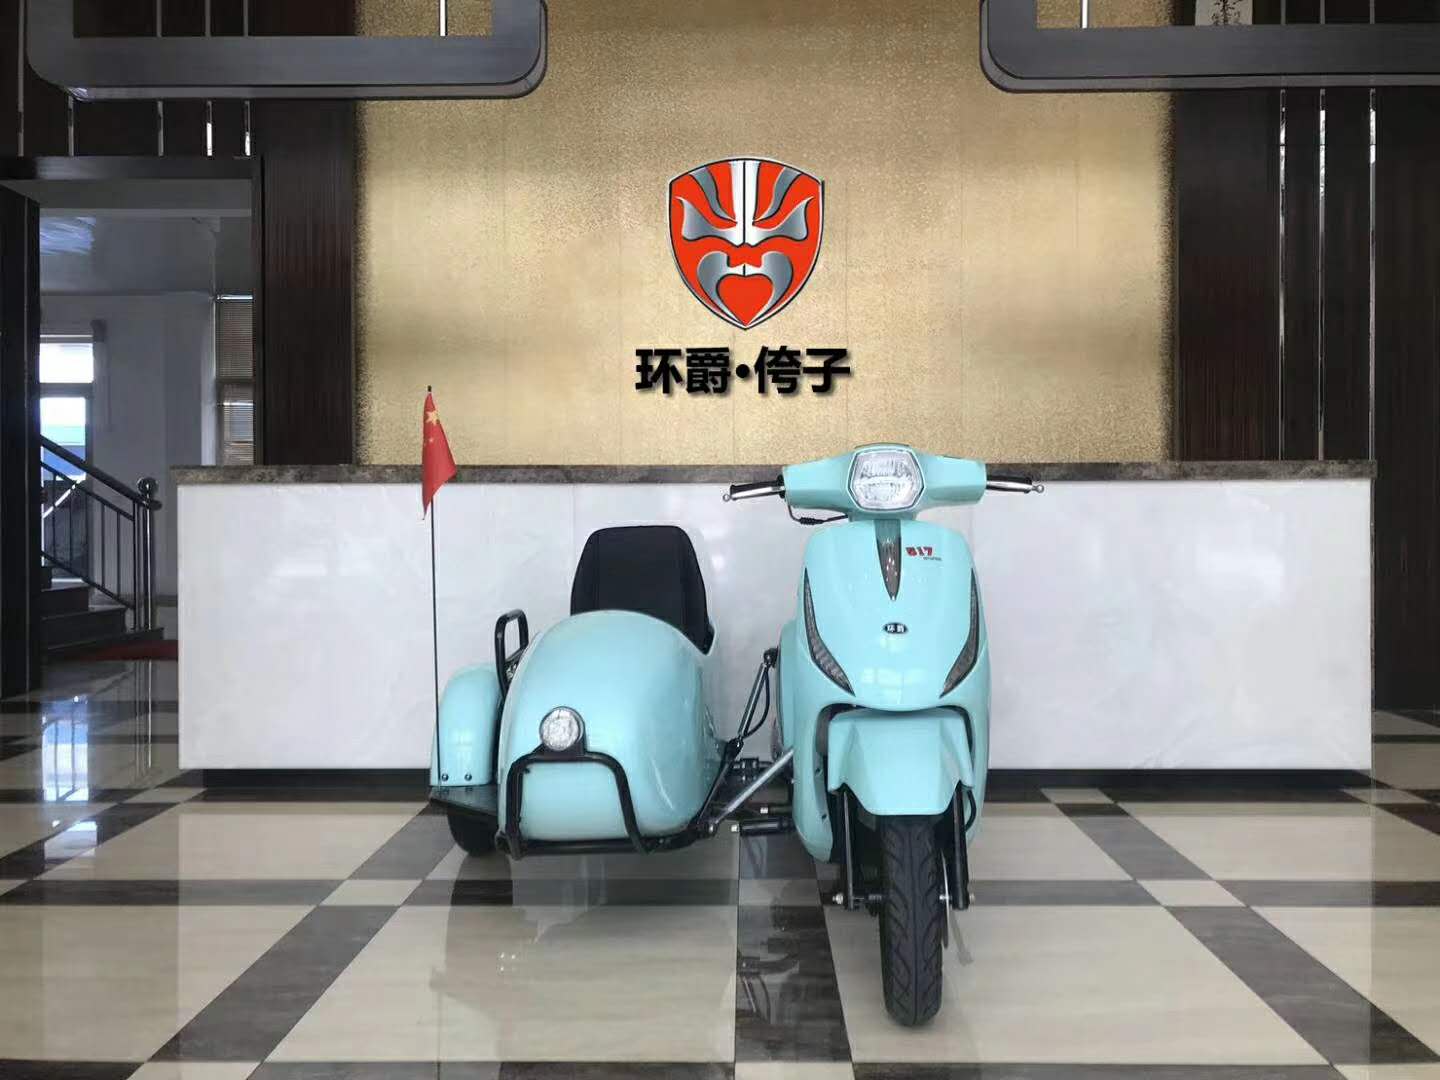 上海环爵125边三轮生产厂家 摩托车价格多少钱一台